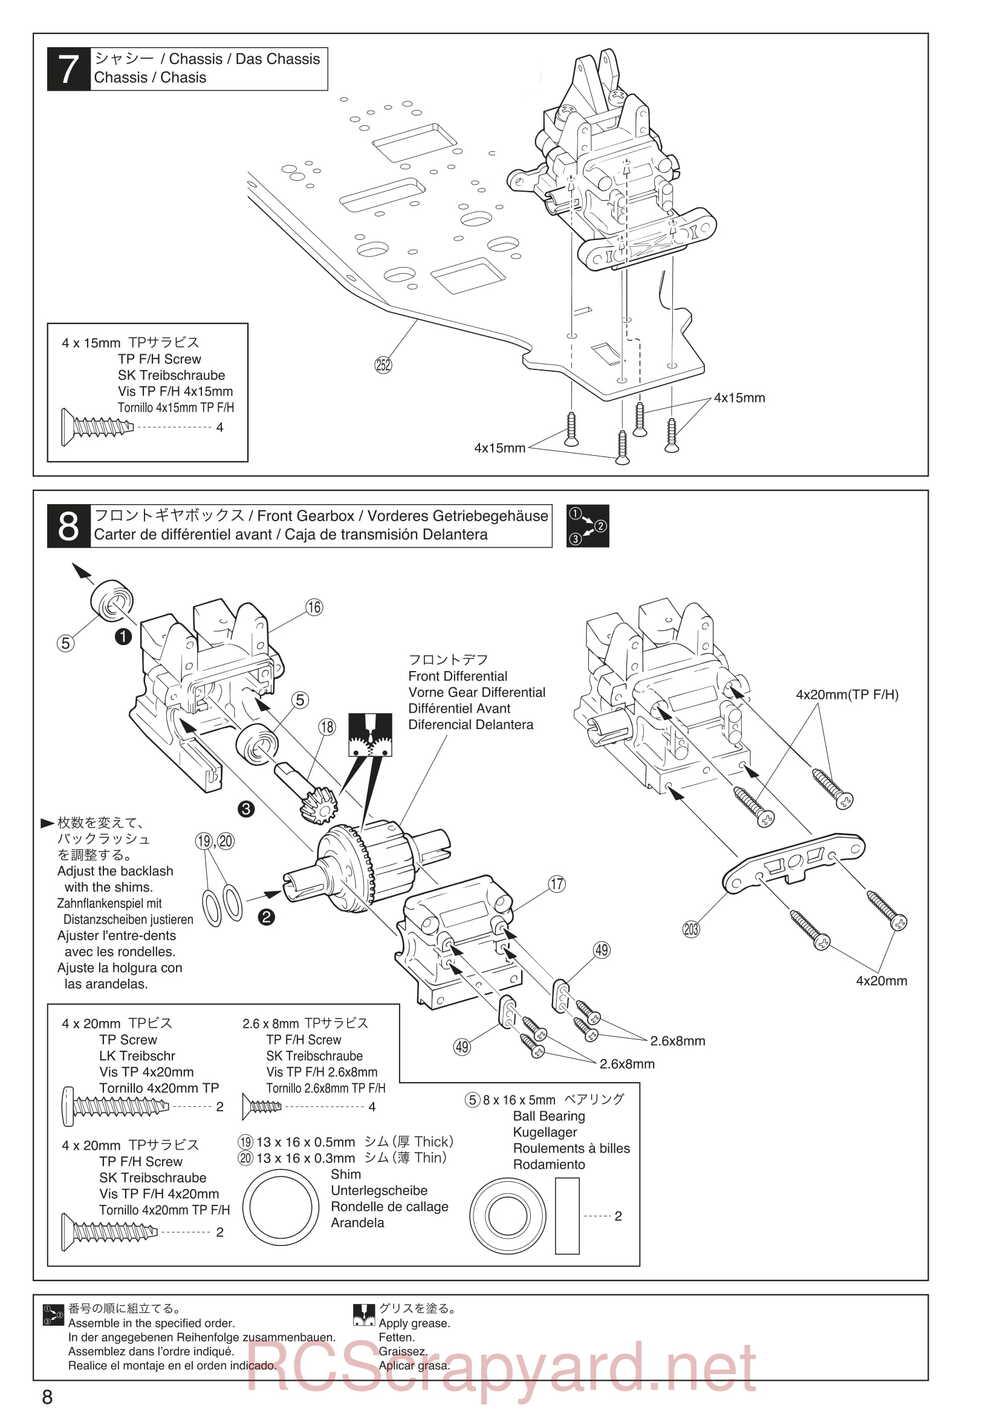 Kyosho - 30935 - Inferno GT2 VE Race-Spec - Manual - Page 08